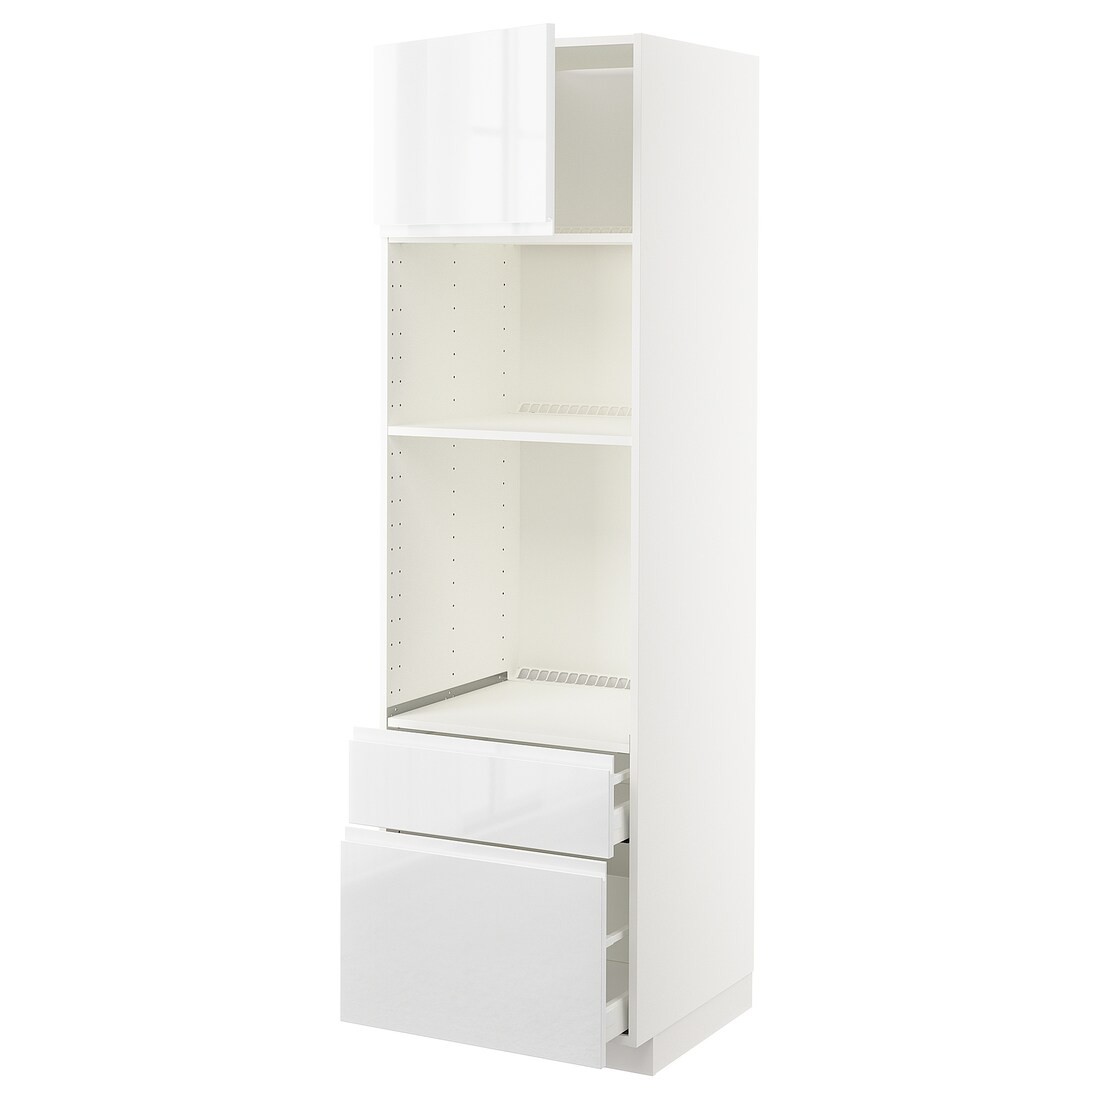 METOD МЕТОД / MAXIMERA МАКСИМЕРА Высокий шкаф для духовки / микроволновки с дверями / 2 ящиками, белый / Voxtorp глянцевый / белый, 60x60x200 см